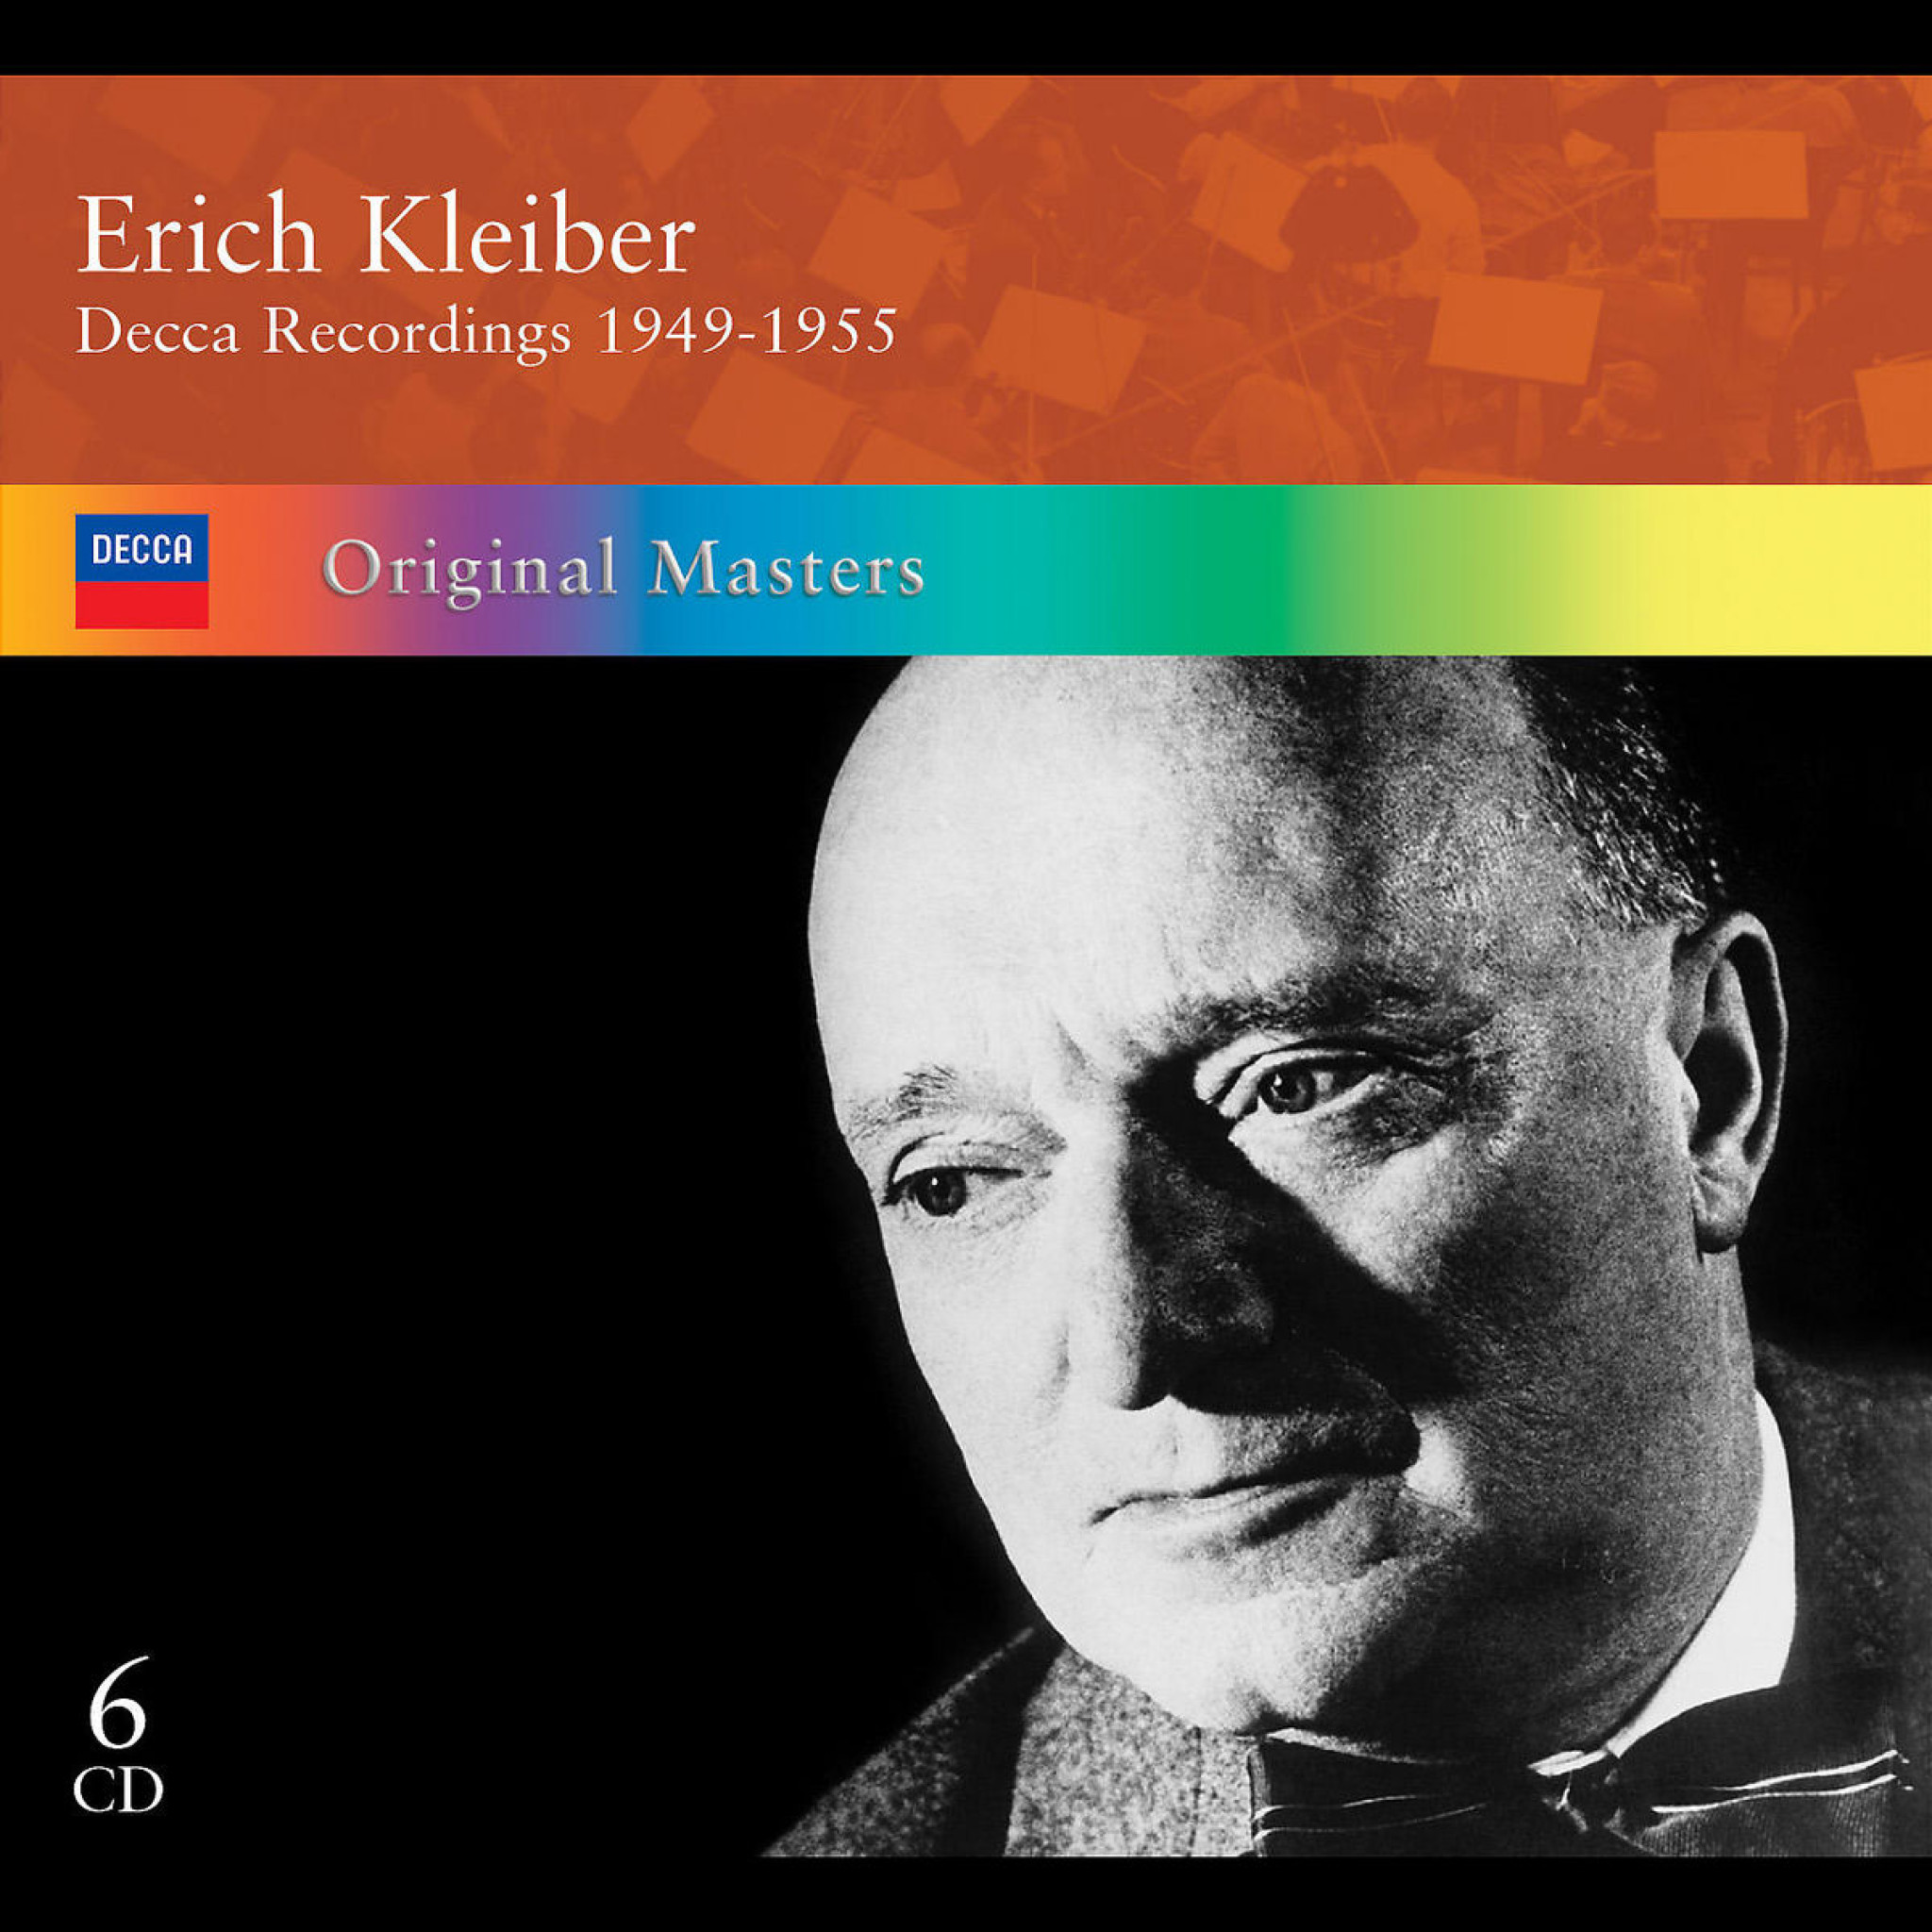 ERICH KLEIBER